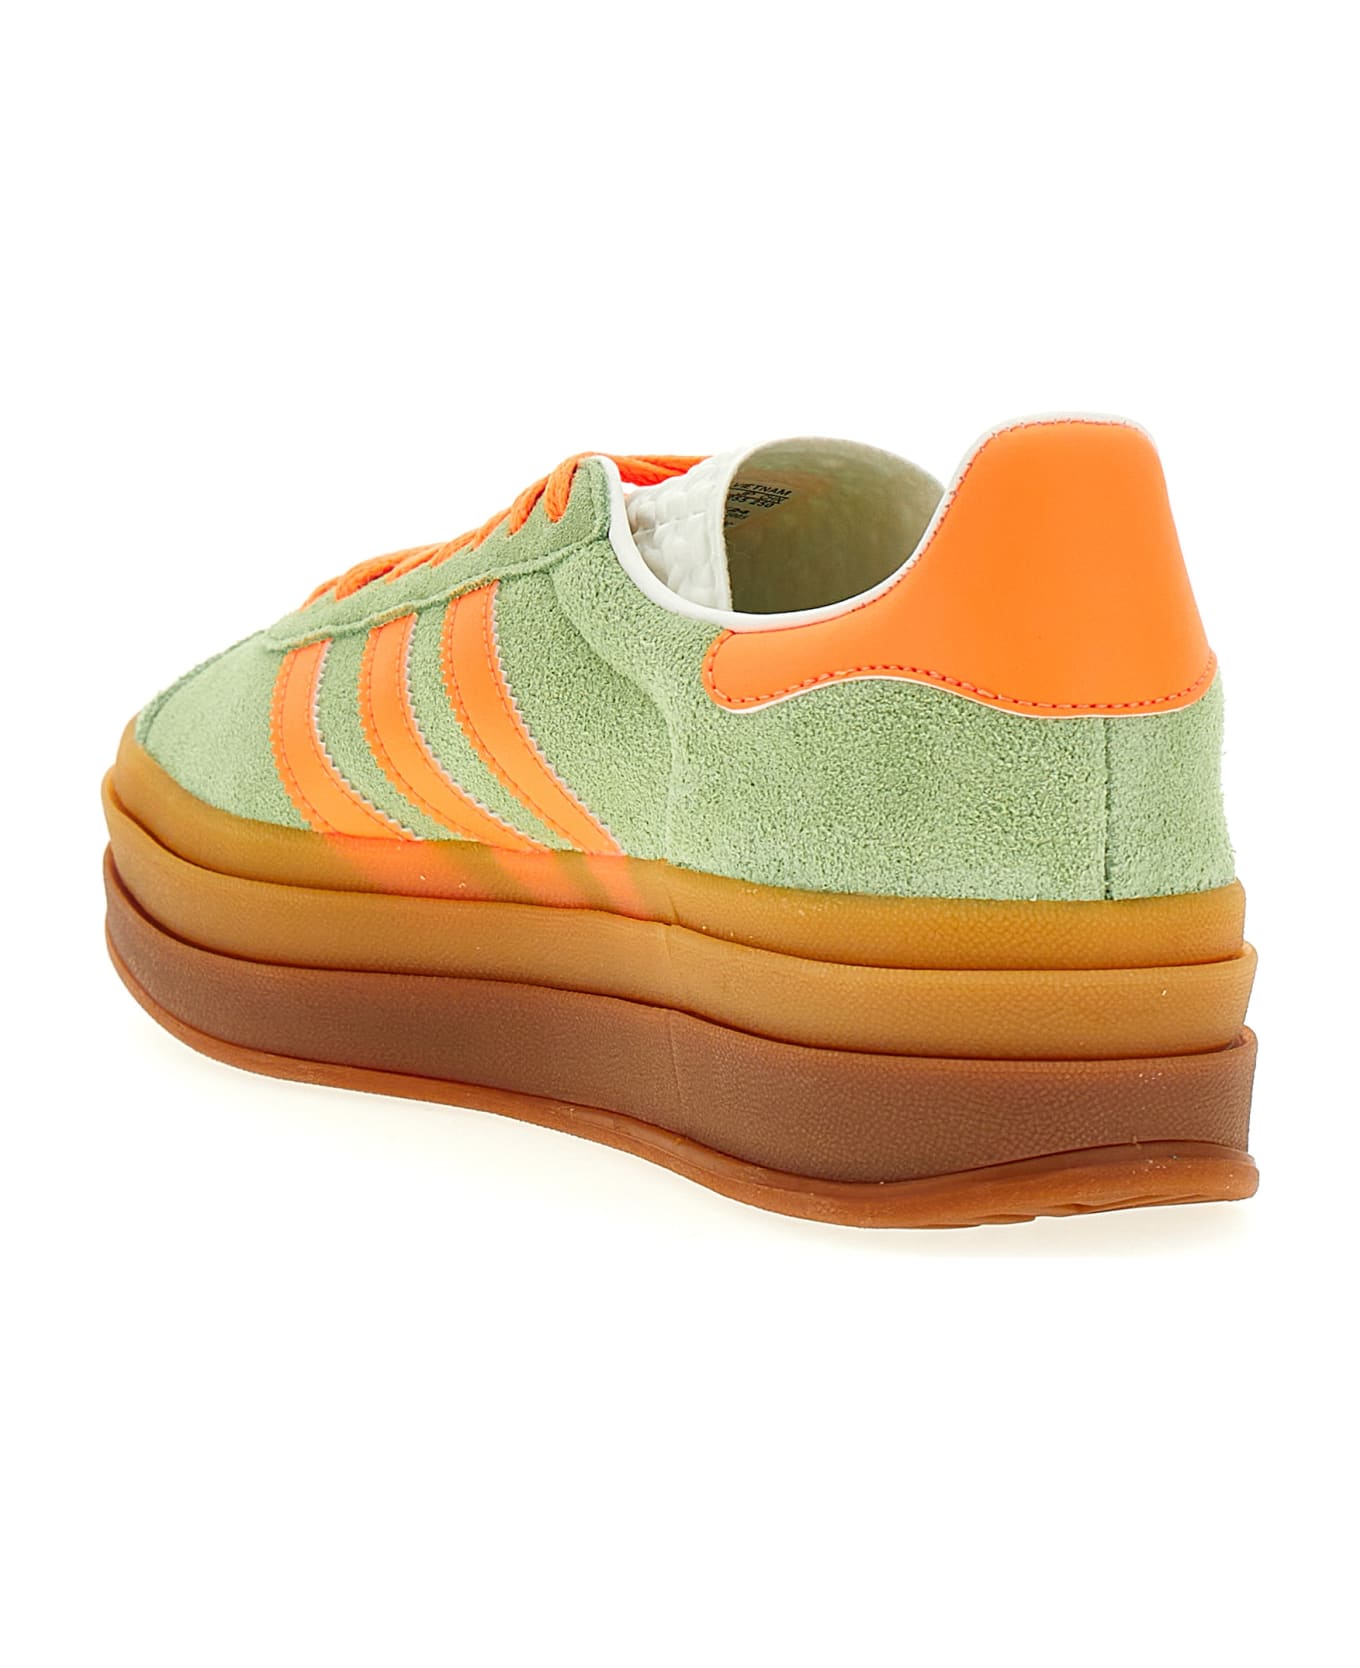 Adidas Originals 'gazelle Bold' Sneakers - Multicolor